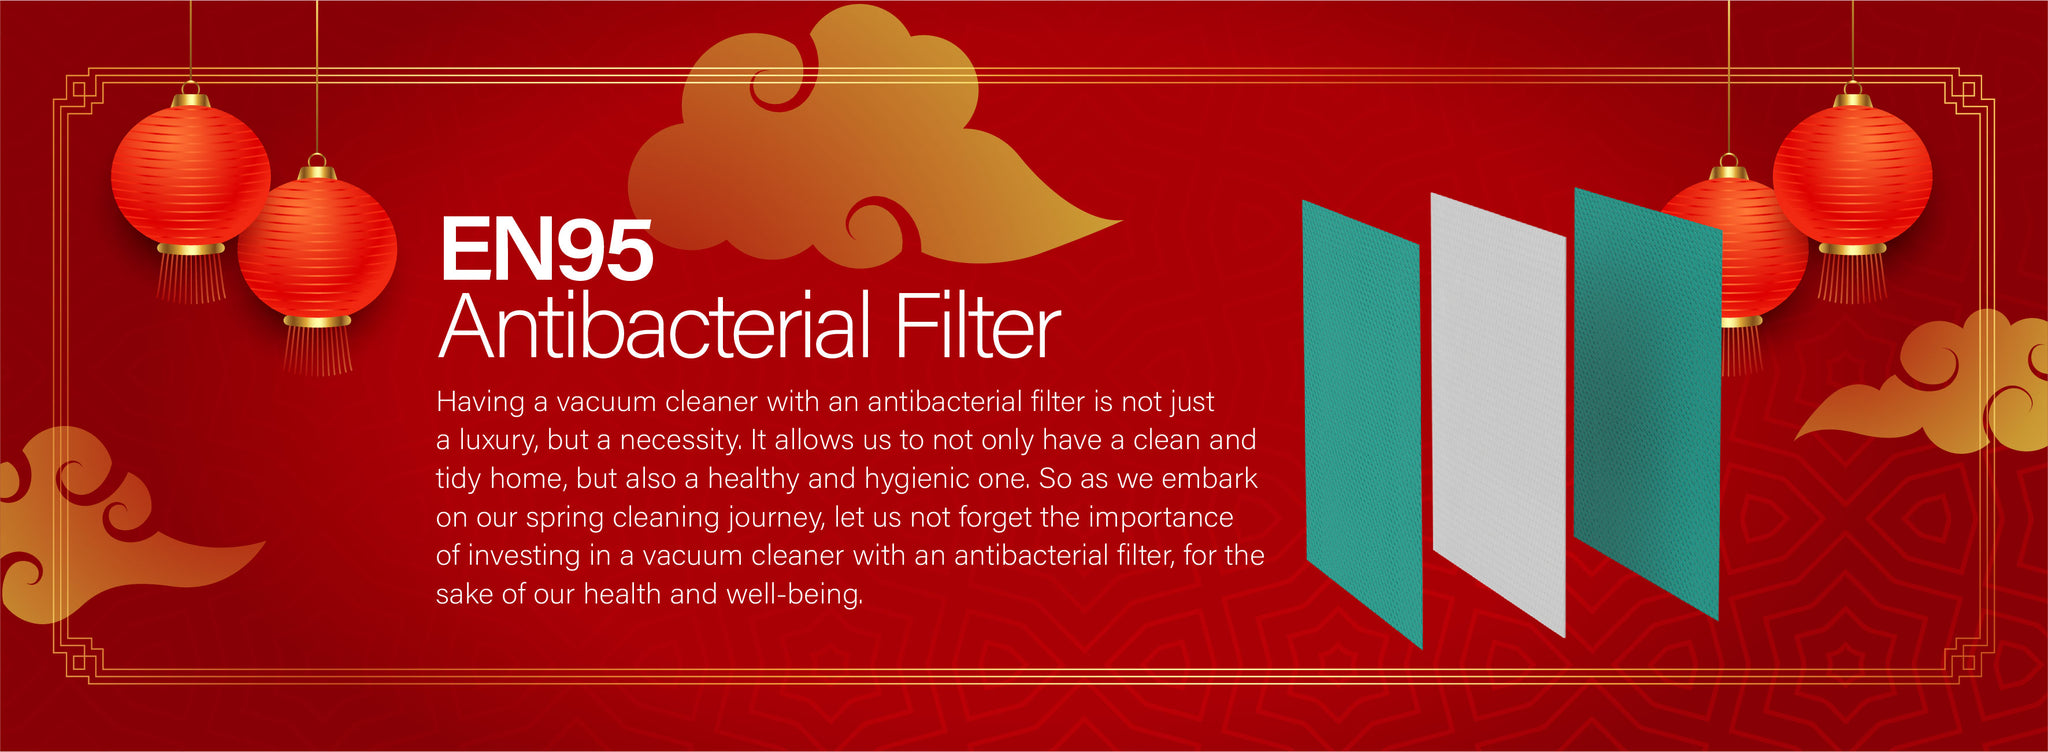 Spring cleaning essentials EN95 antibacterial filter